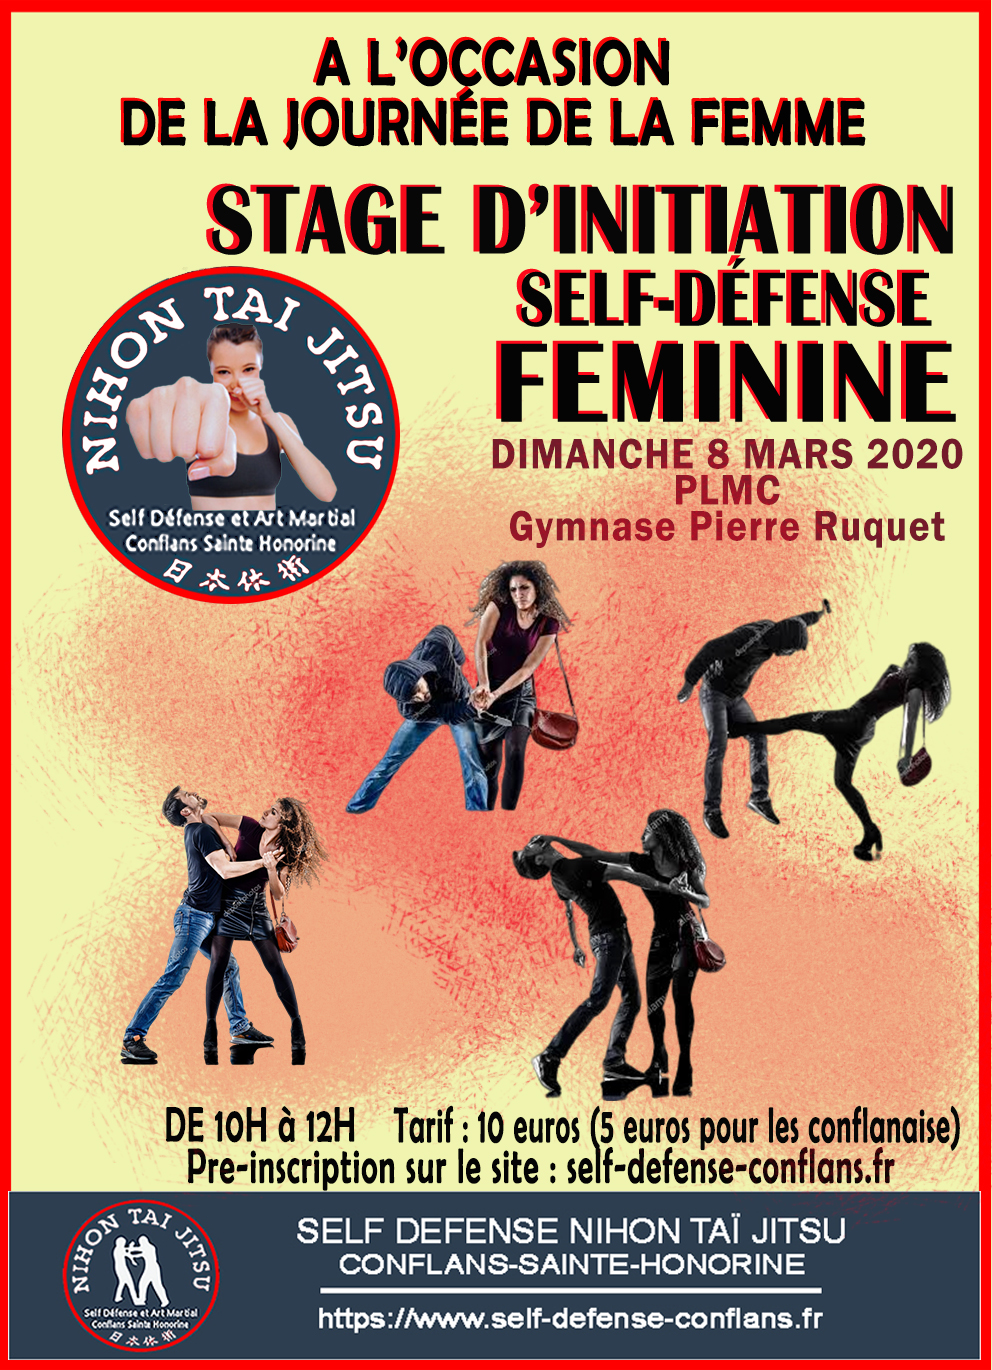 Self-Défense Femme à Annecy - Stages avec Ladies Defense